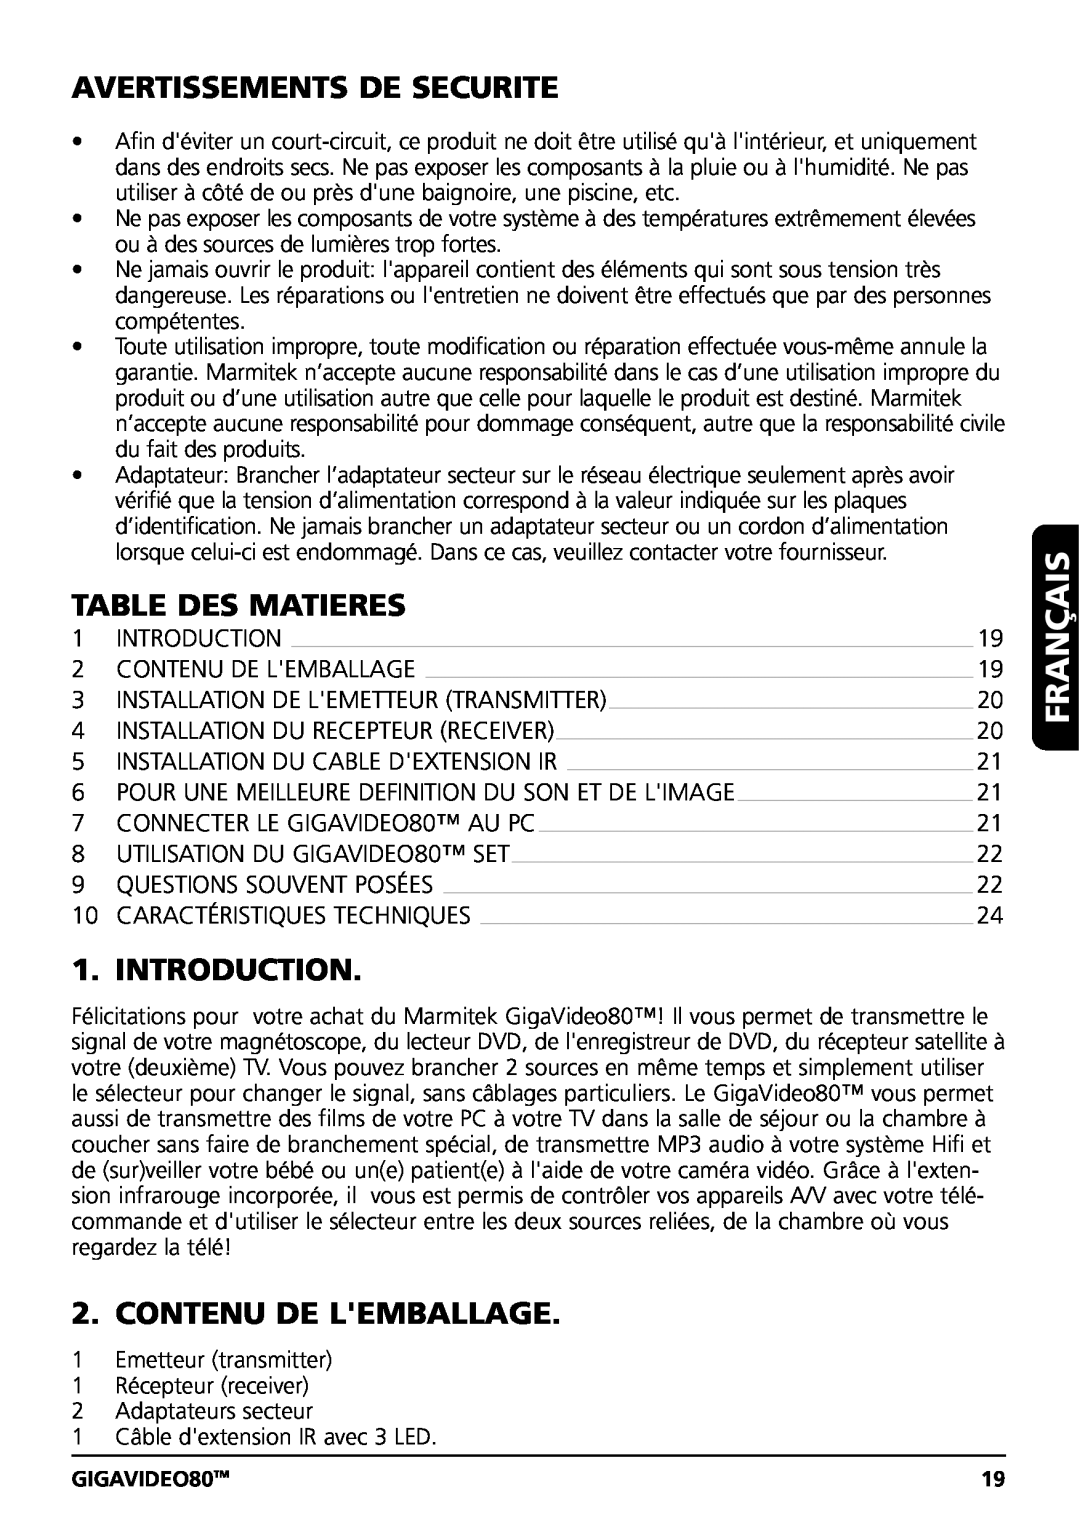 Marmitek GIGAVIDEO80 Français, Avertissements De Securite, Table Des Matieres, Contenu De Lemballage, Introduction 